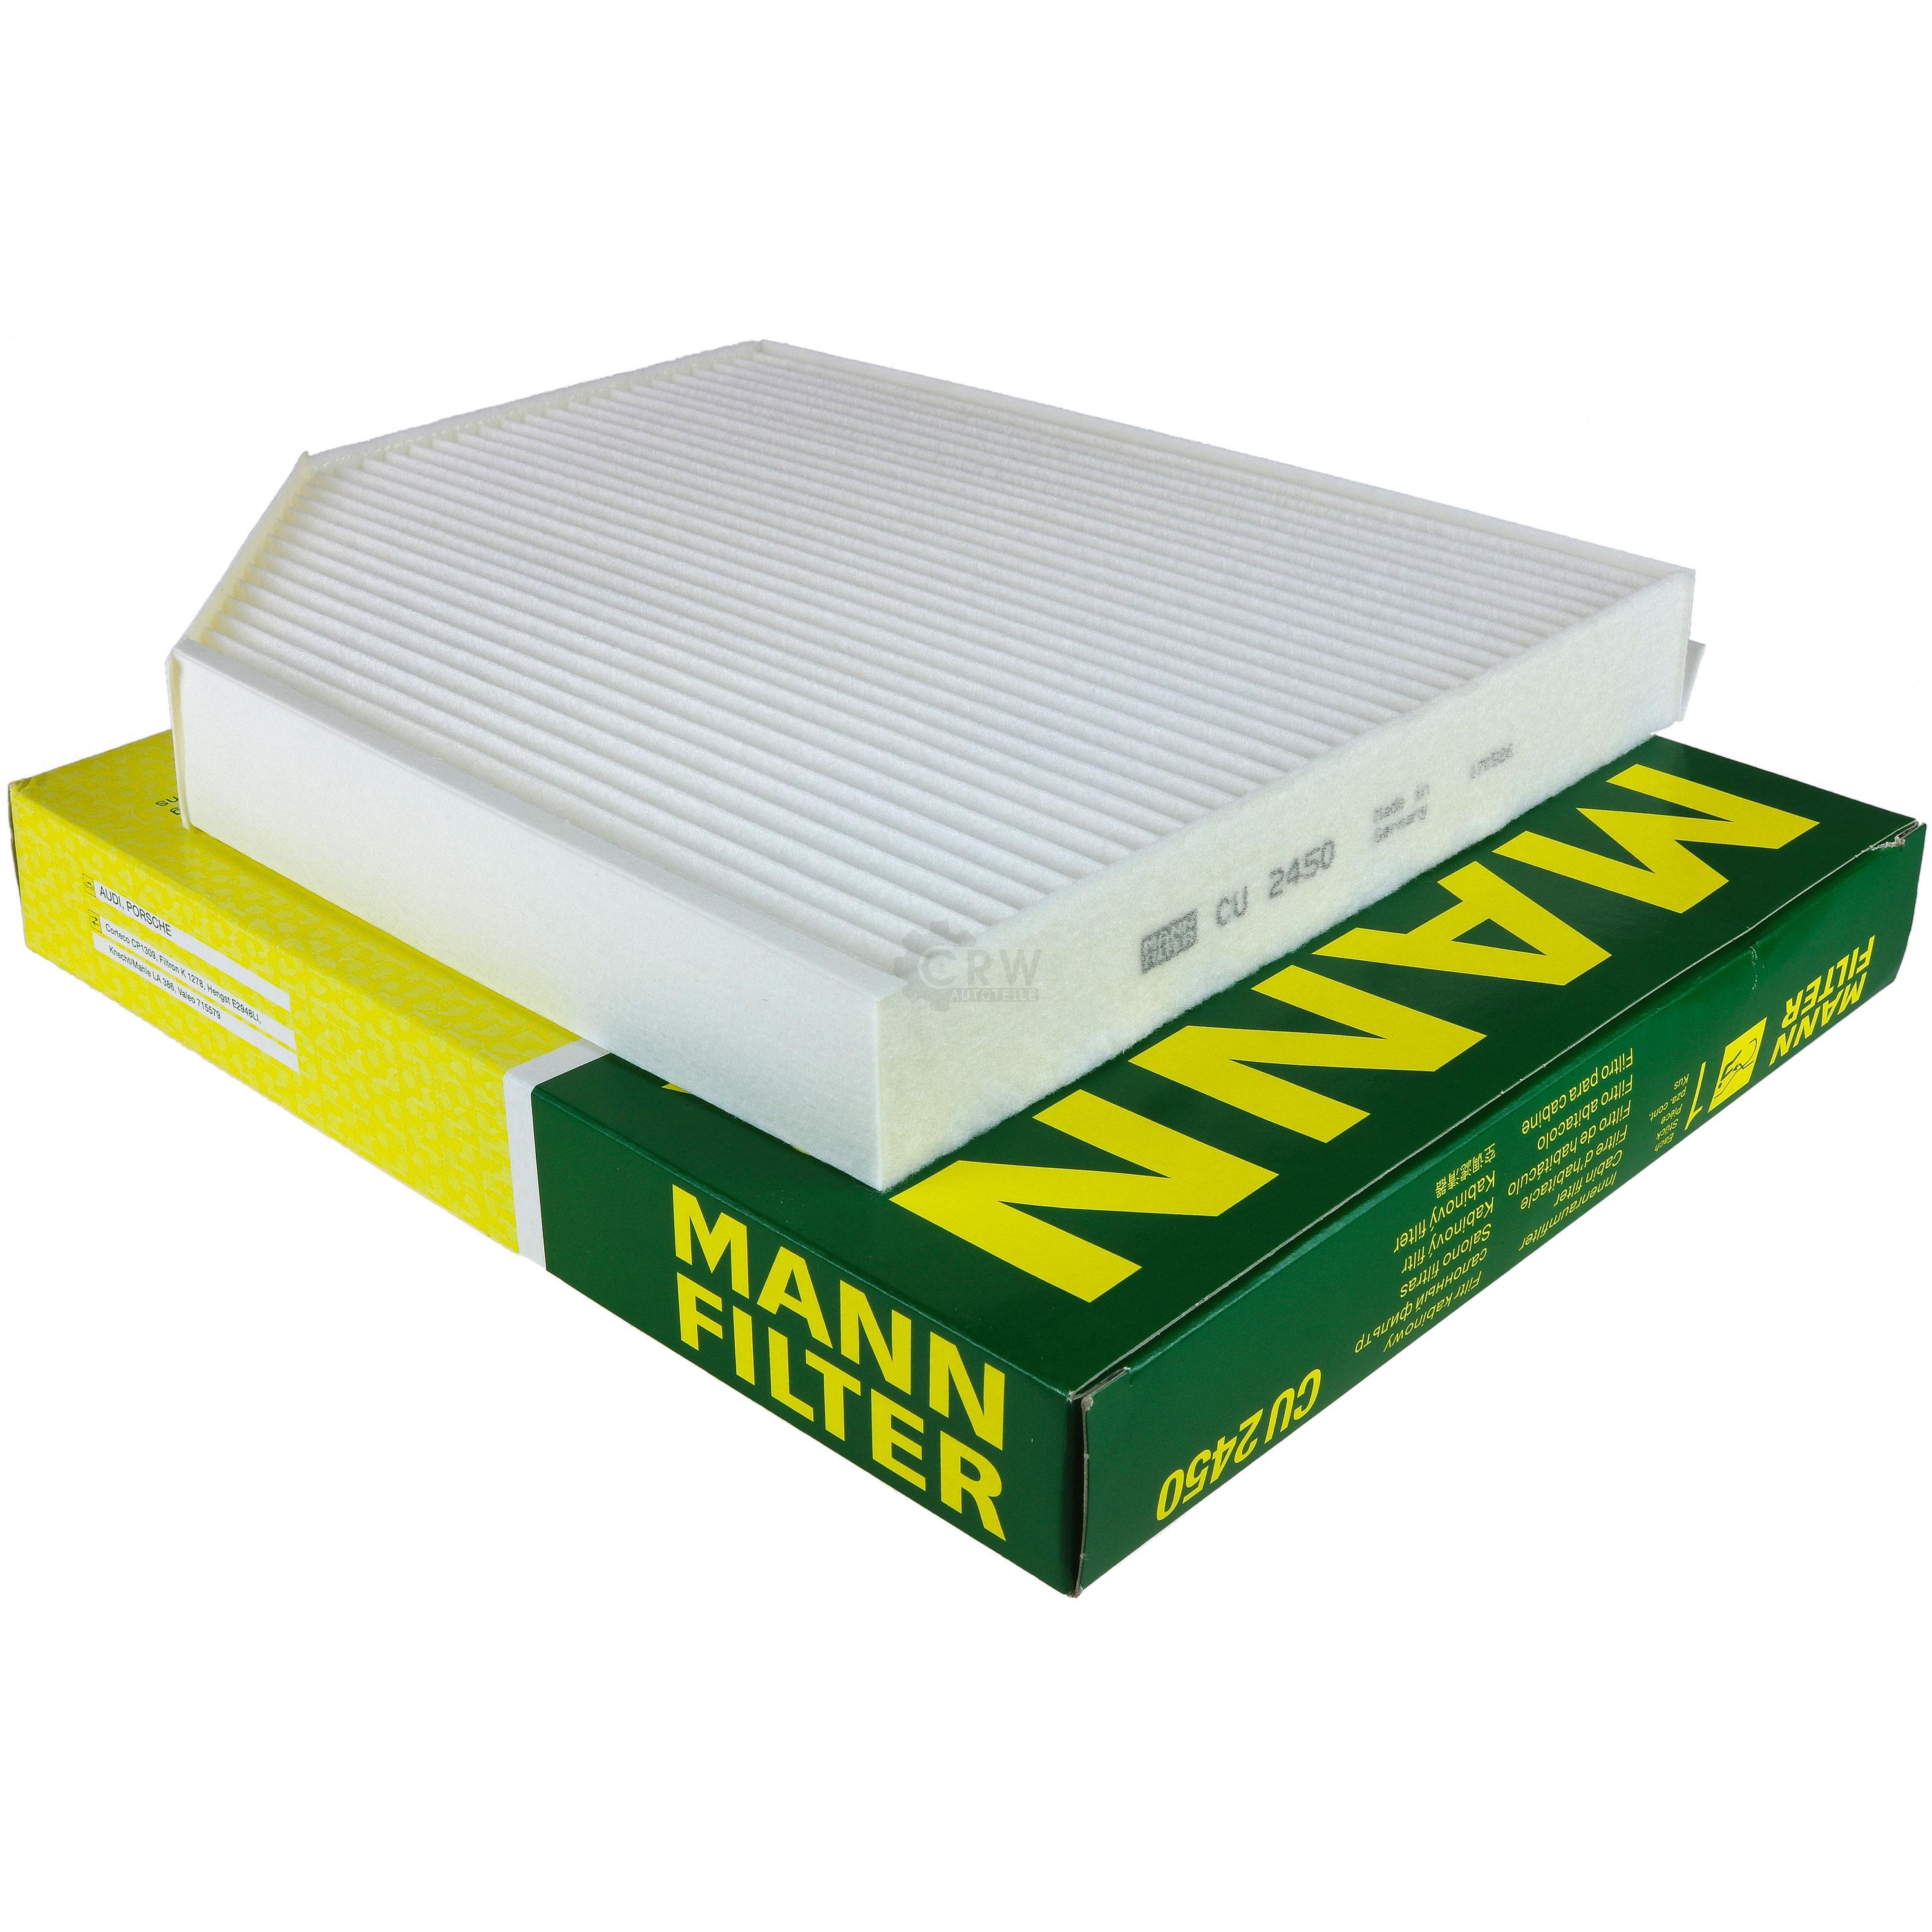 MANN-FILTER Innenraumfilter Pollenfilter CU 2450